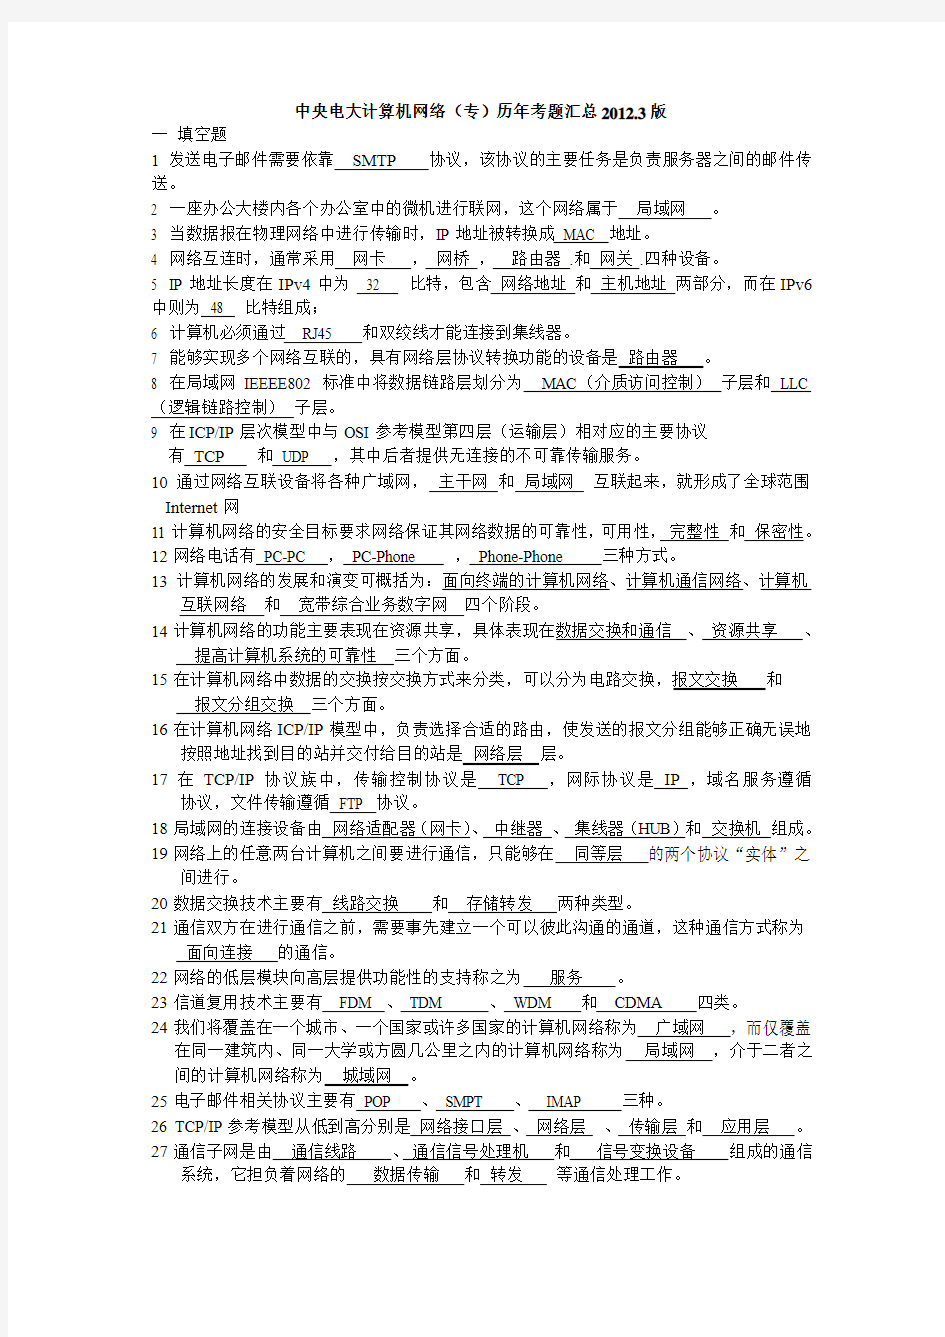 中央电大计算机网络(专)历年考题汇总2012.3版